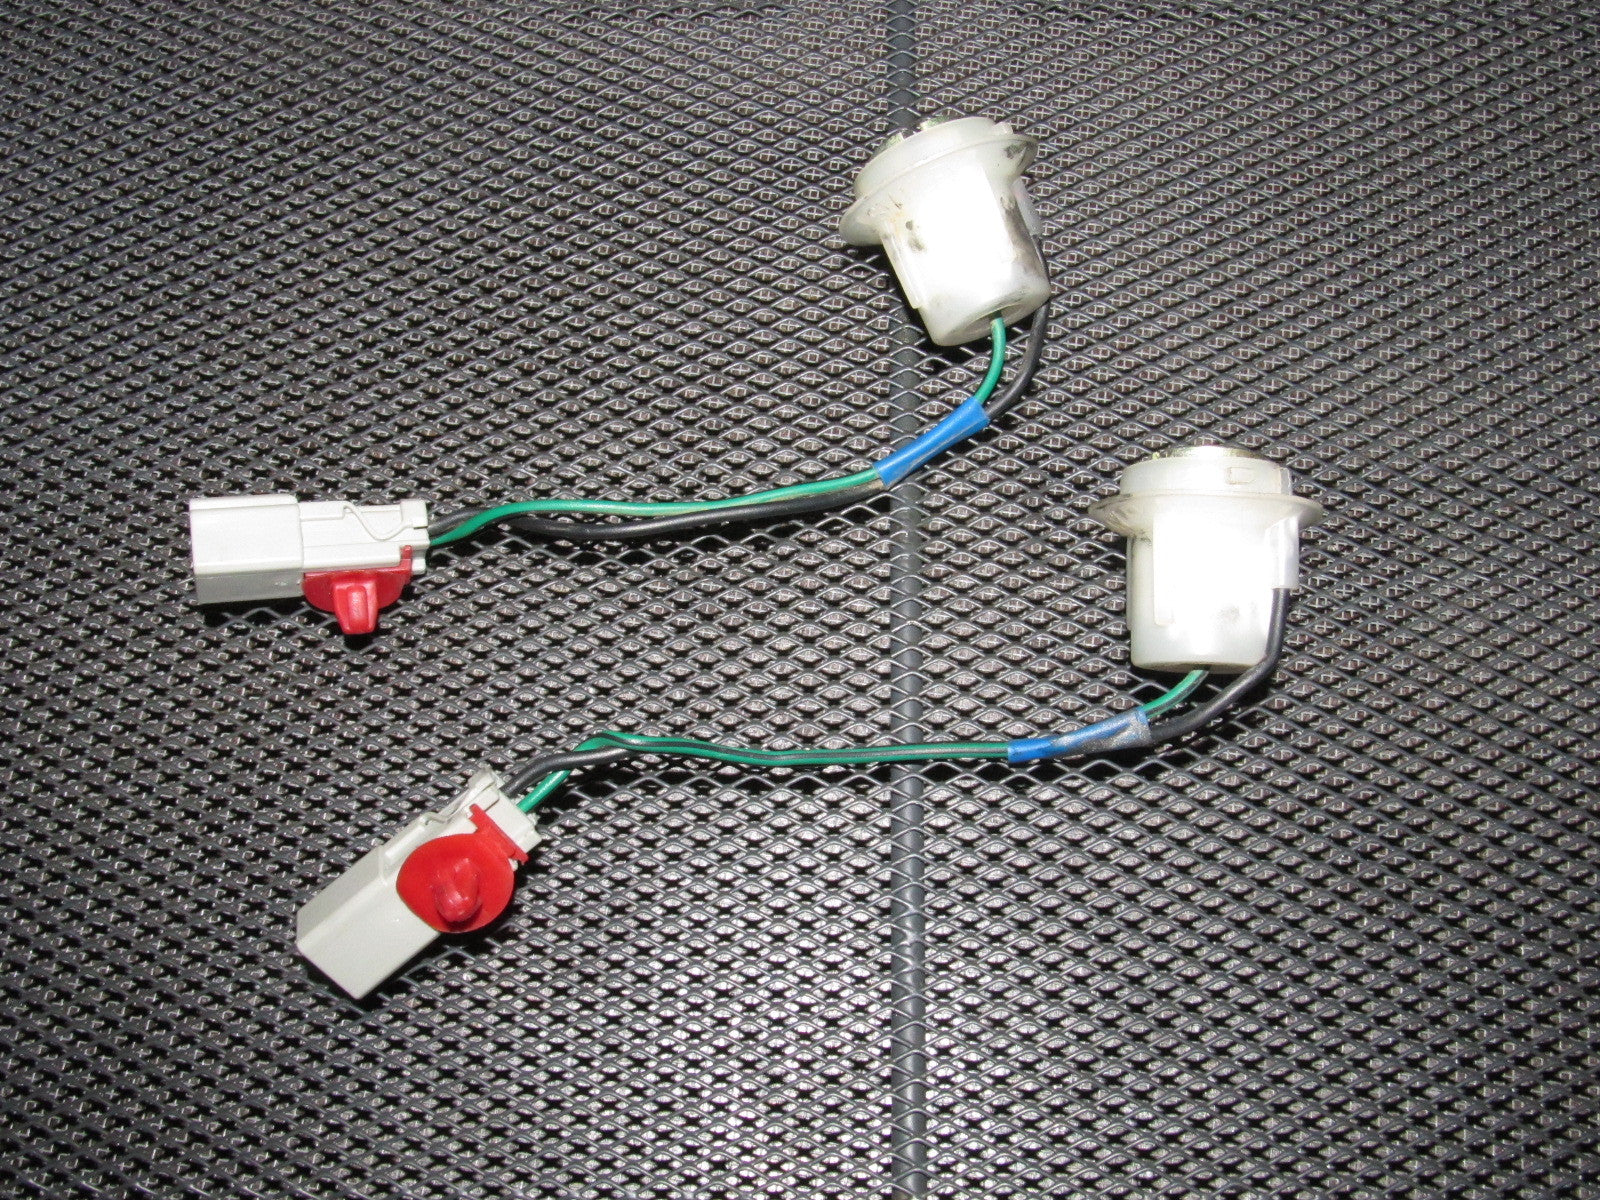 88 89 90 91 Honda CRX OEM Center Reverse Tail Light Bulb Socket